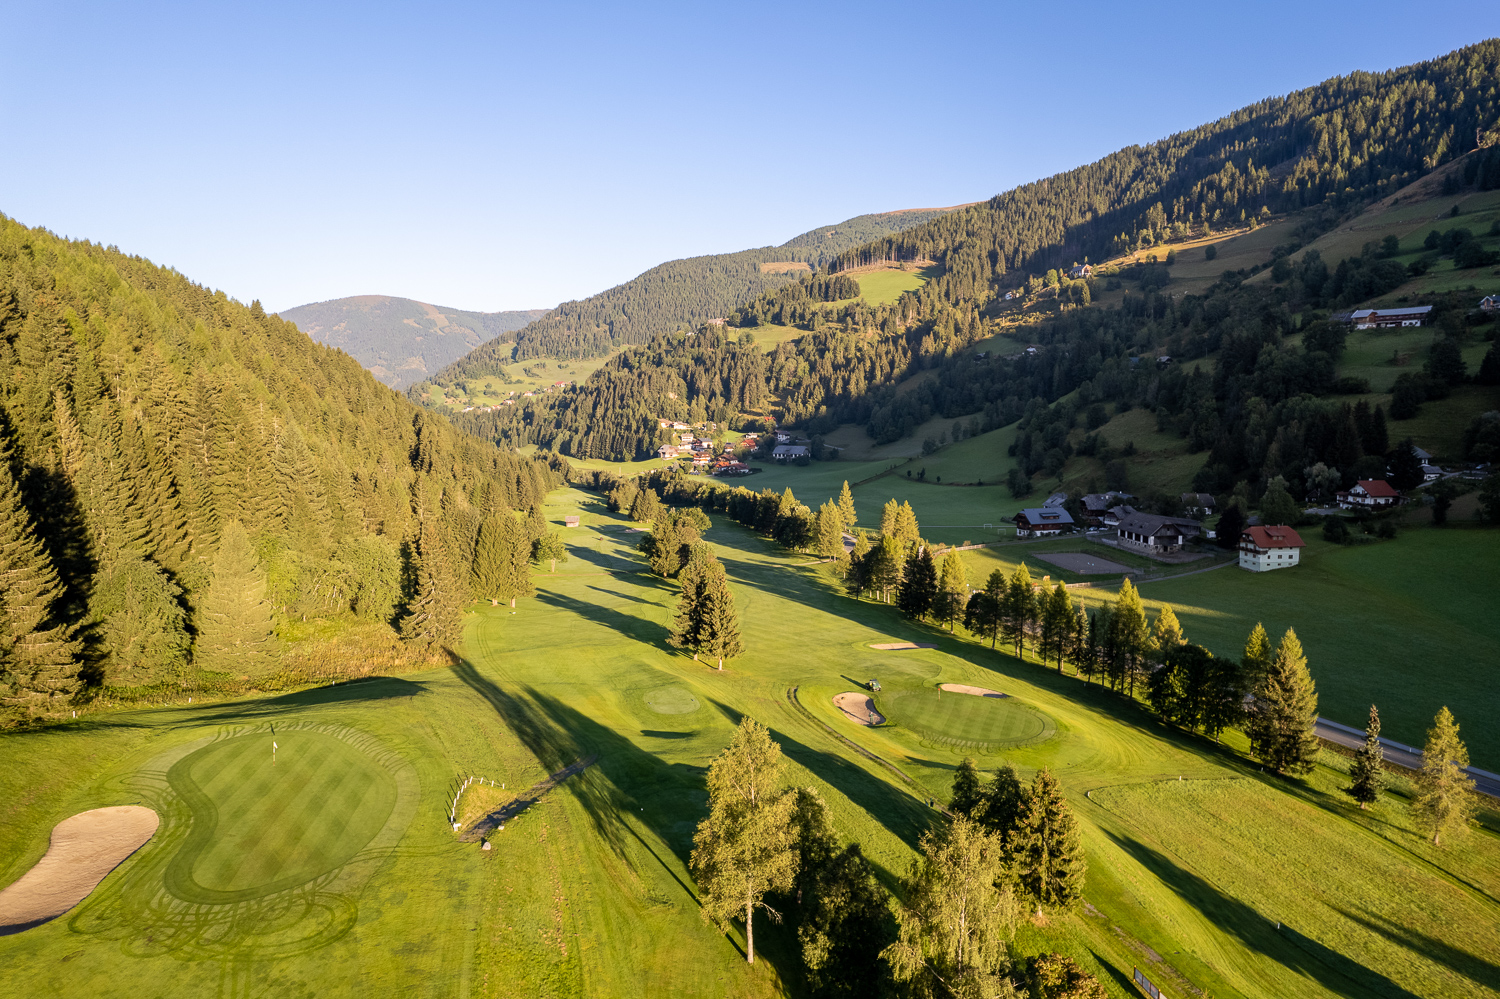 Golfurlaub in Kärnten: Golfplatz Bad Kleinkirchheim - 18 Loch Golfanlage in den wunderschönen Kärntner Nockbergen